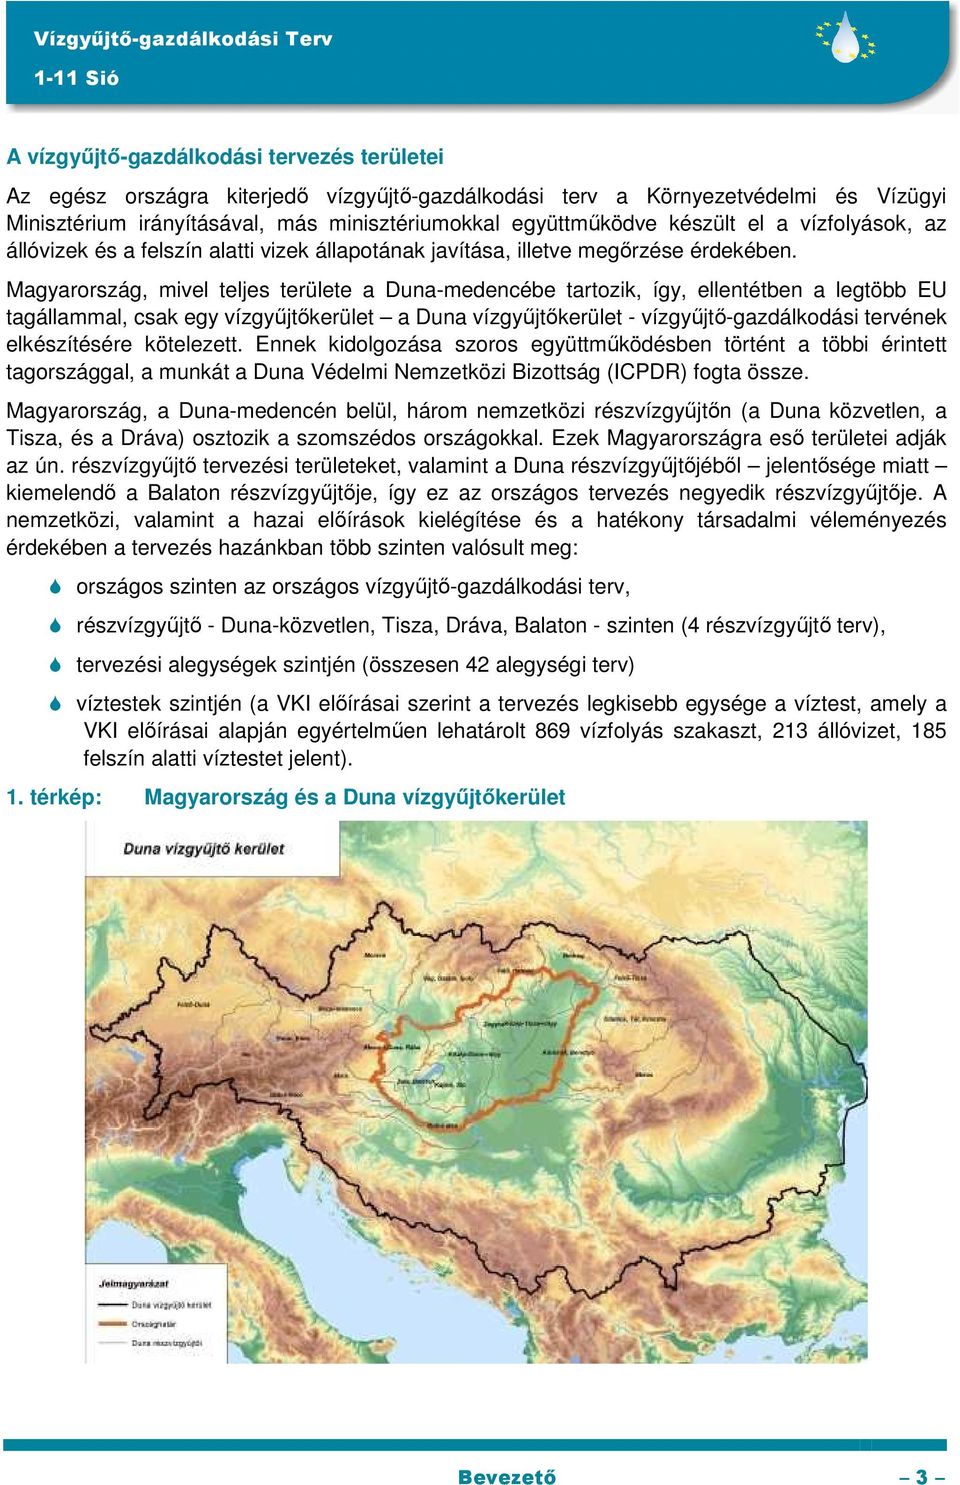 Magyarország, mivel teljes területe a Duna-medencébe tartozik, így, ellentétben a legtöbb EU tagállammal, csak egy vízgyűjtőkerület a Duna vízgyűjtőkerület - vízgyűjtő-gazdálkodási tervének